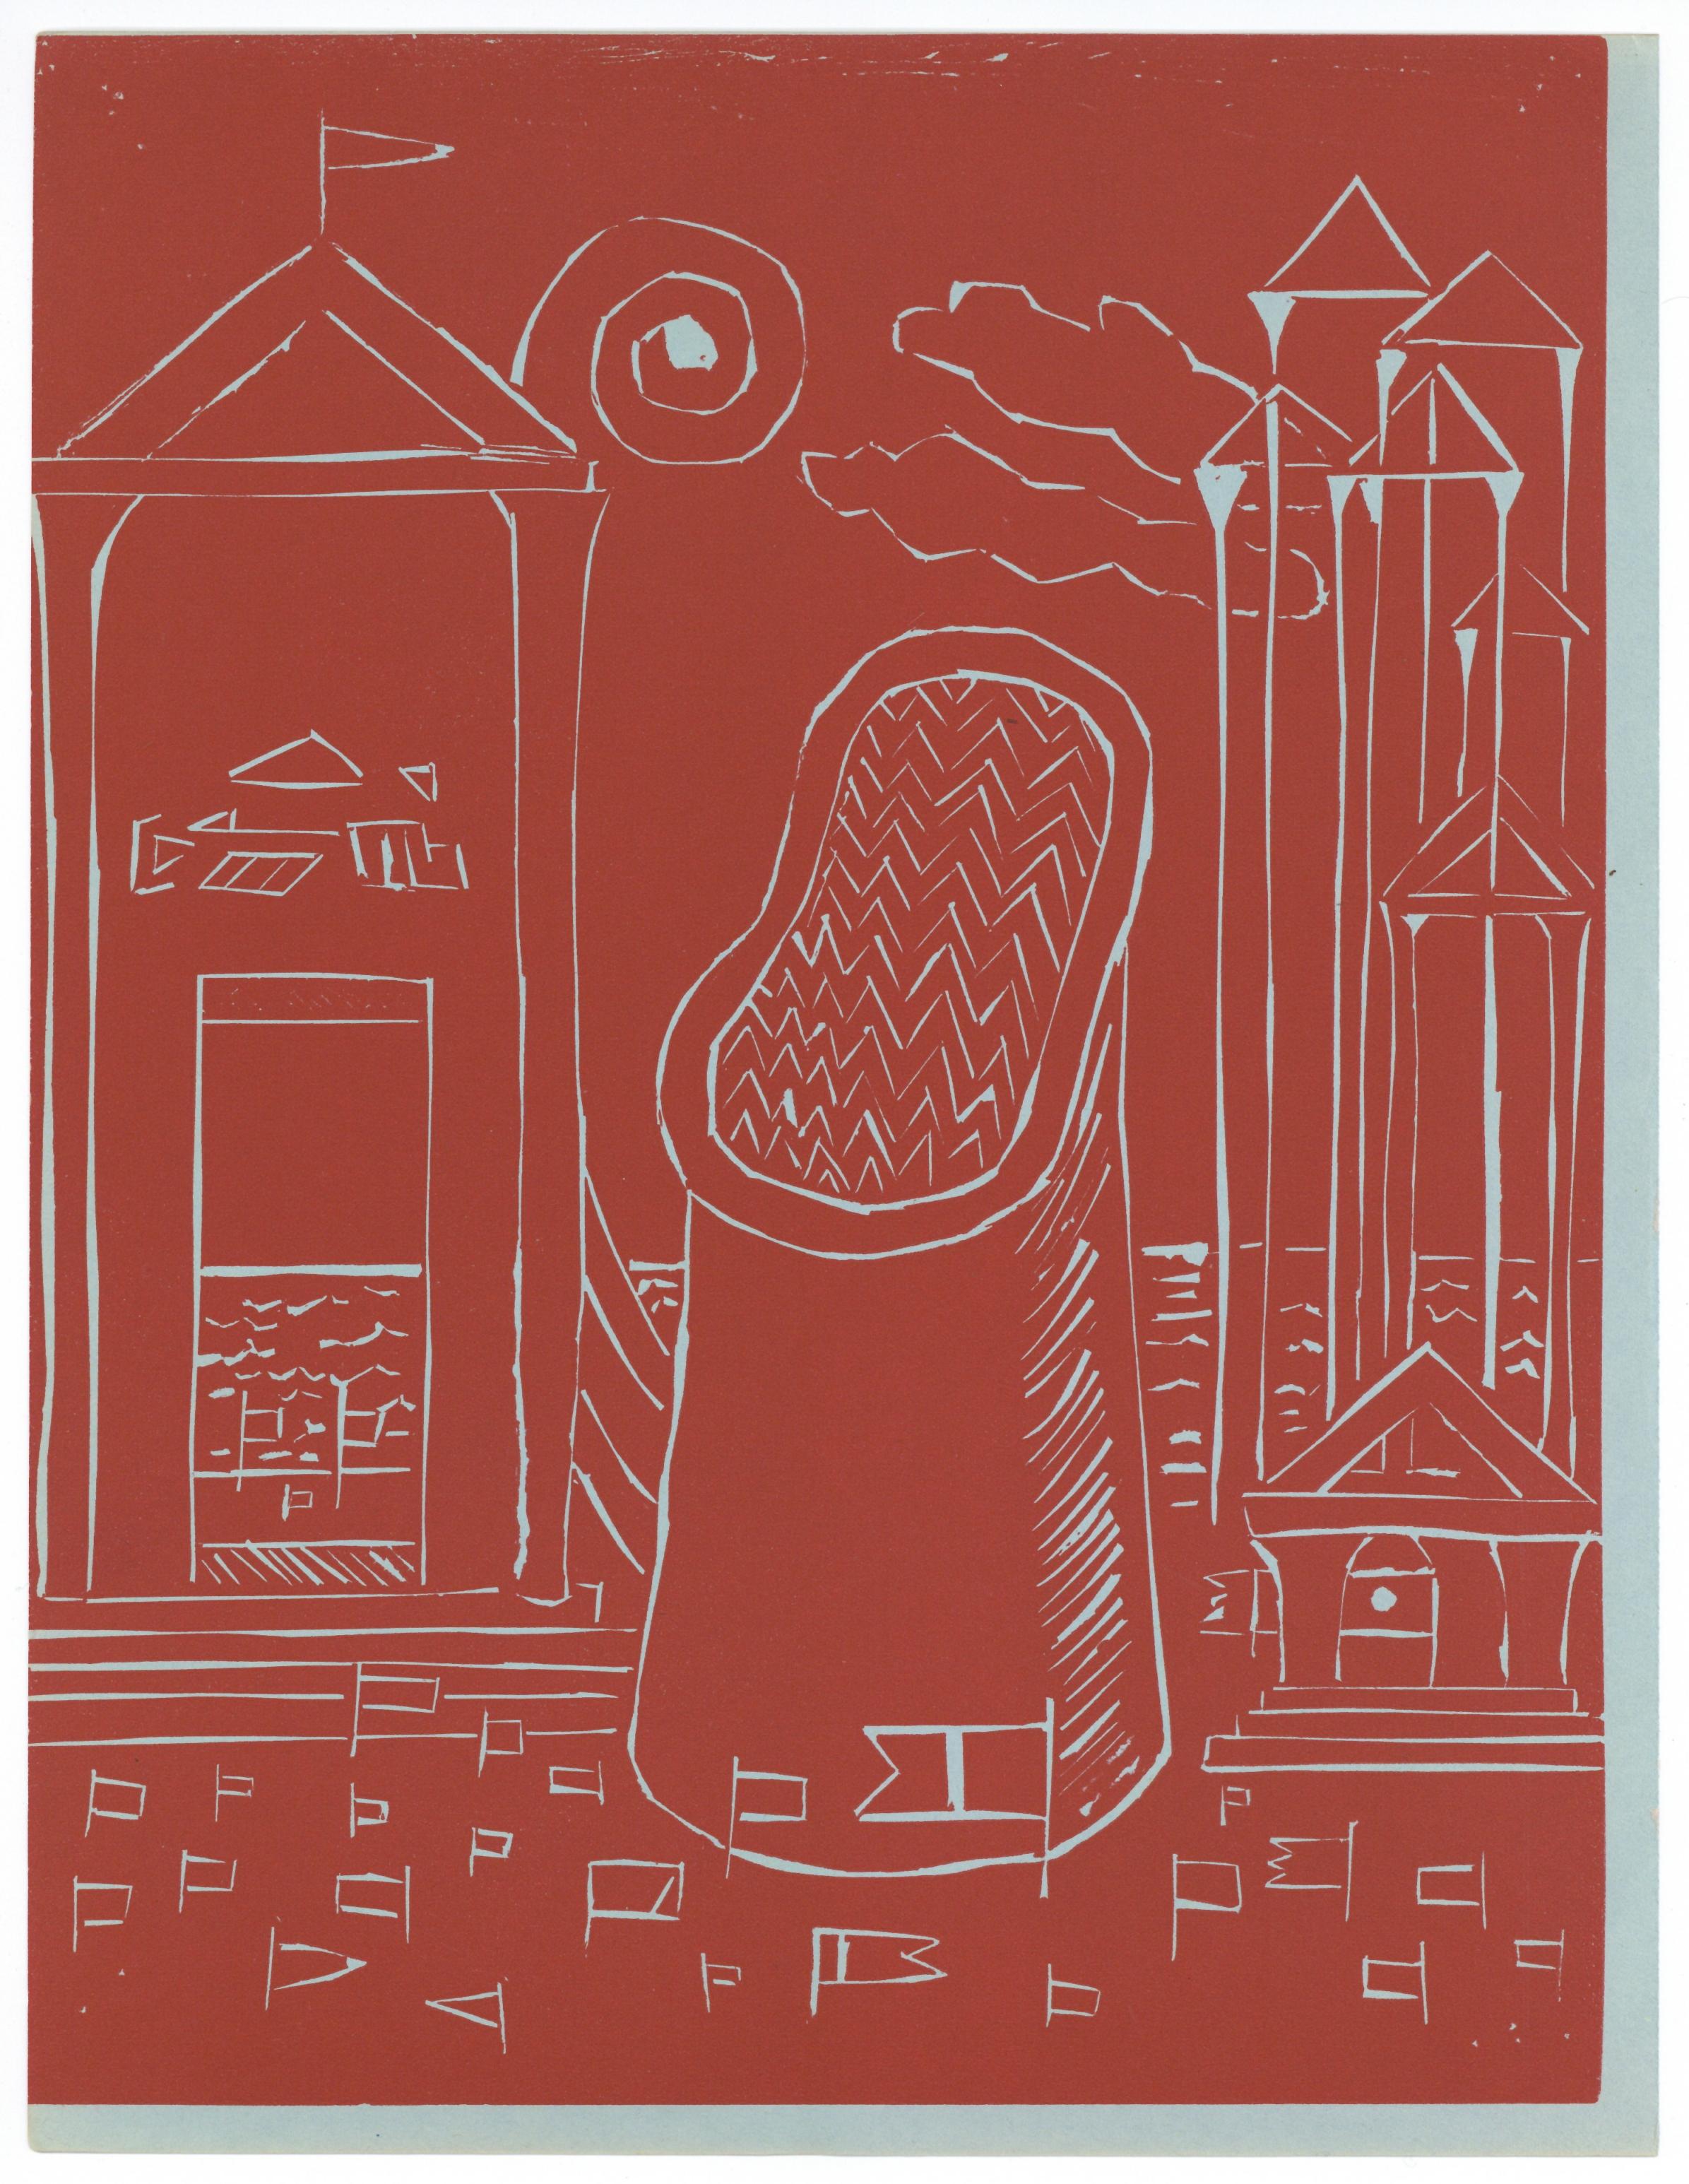 Medium: Original-Linoleumschnitt. Gedruckt 1938 für die Kunstrevue XXe Siecle (Ausgabe Nr. 4) und veröffentlicht in Paris bei San Lazzaro. Blattgröße: 12 1/2 x 9 5/8 Zoll (317 x 243 mm). In der Platte signiert (nicht handsigniert). Hinweis: Giorgio